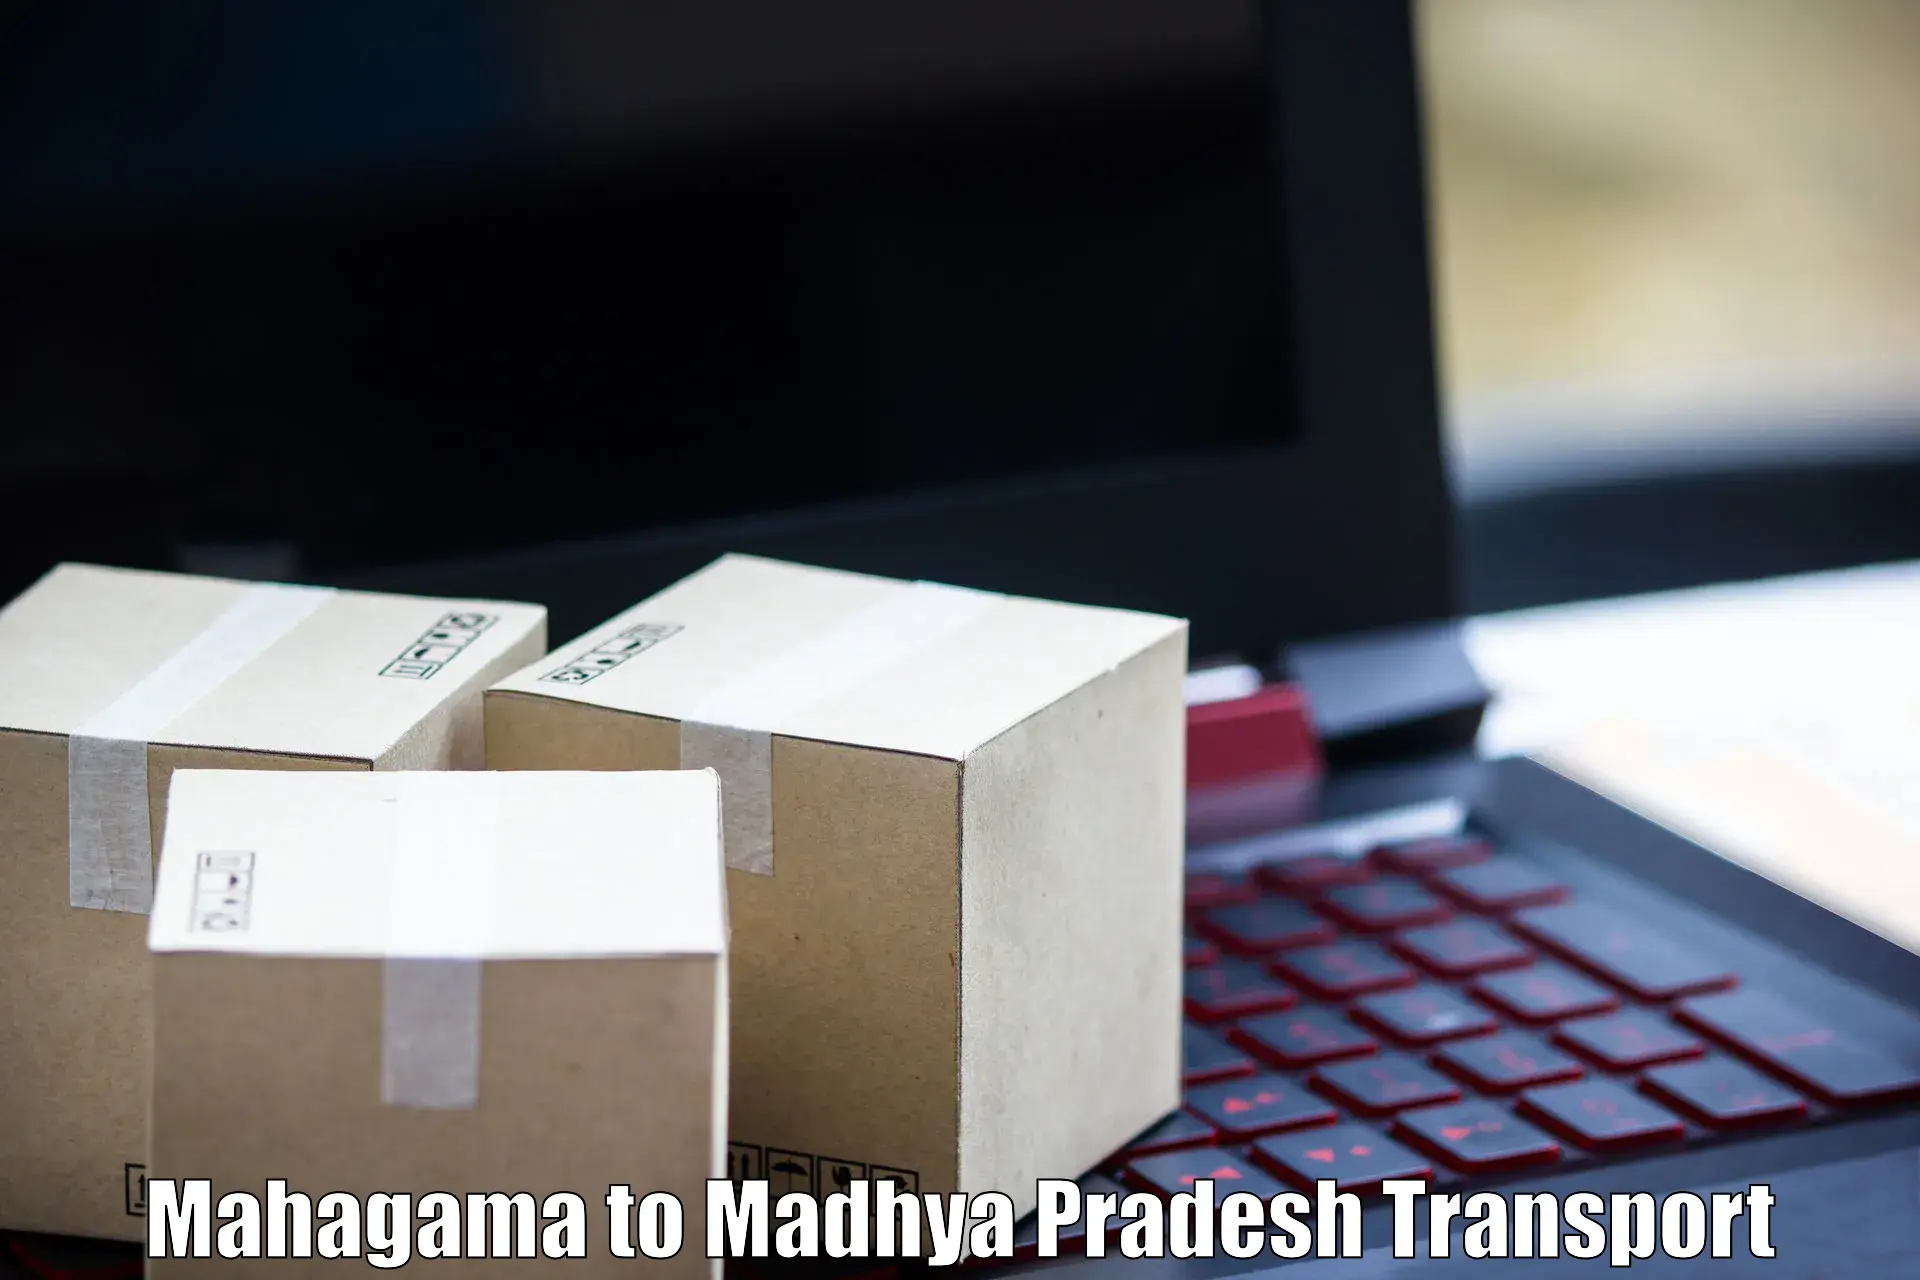 Daily transport service Mahagama to Lashkar